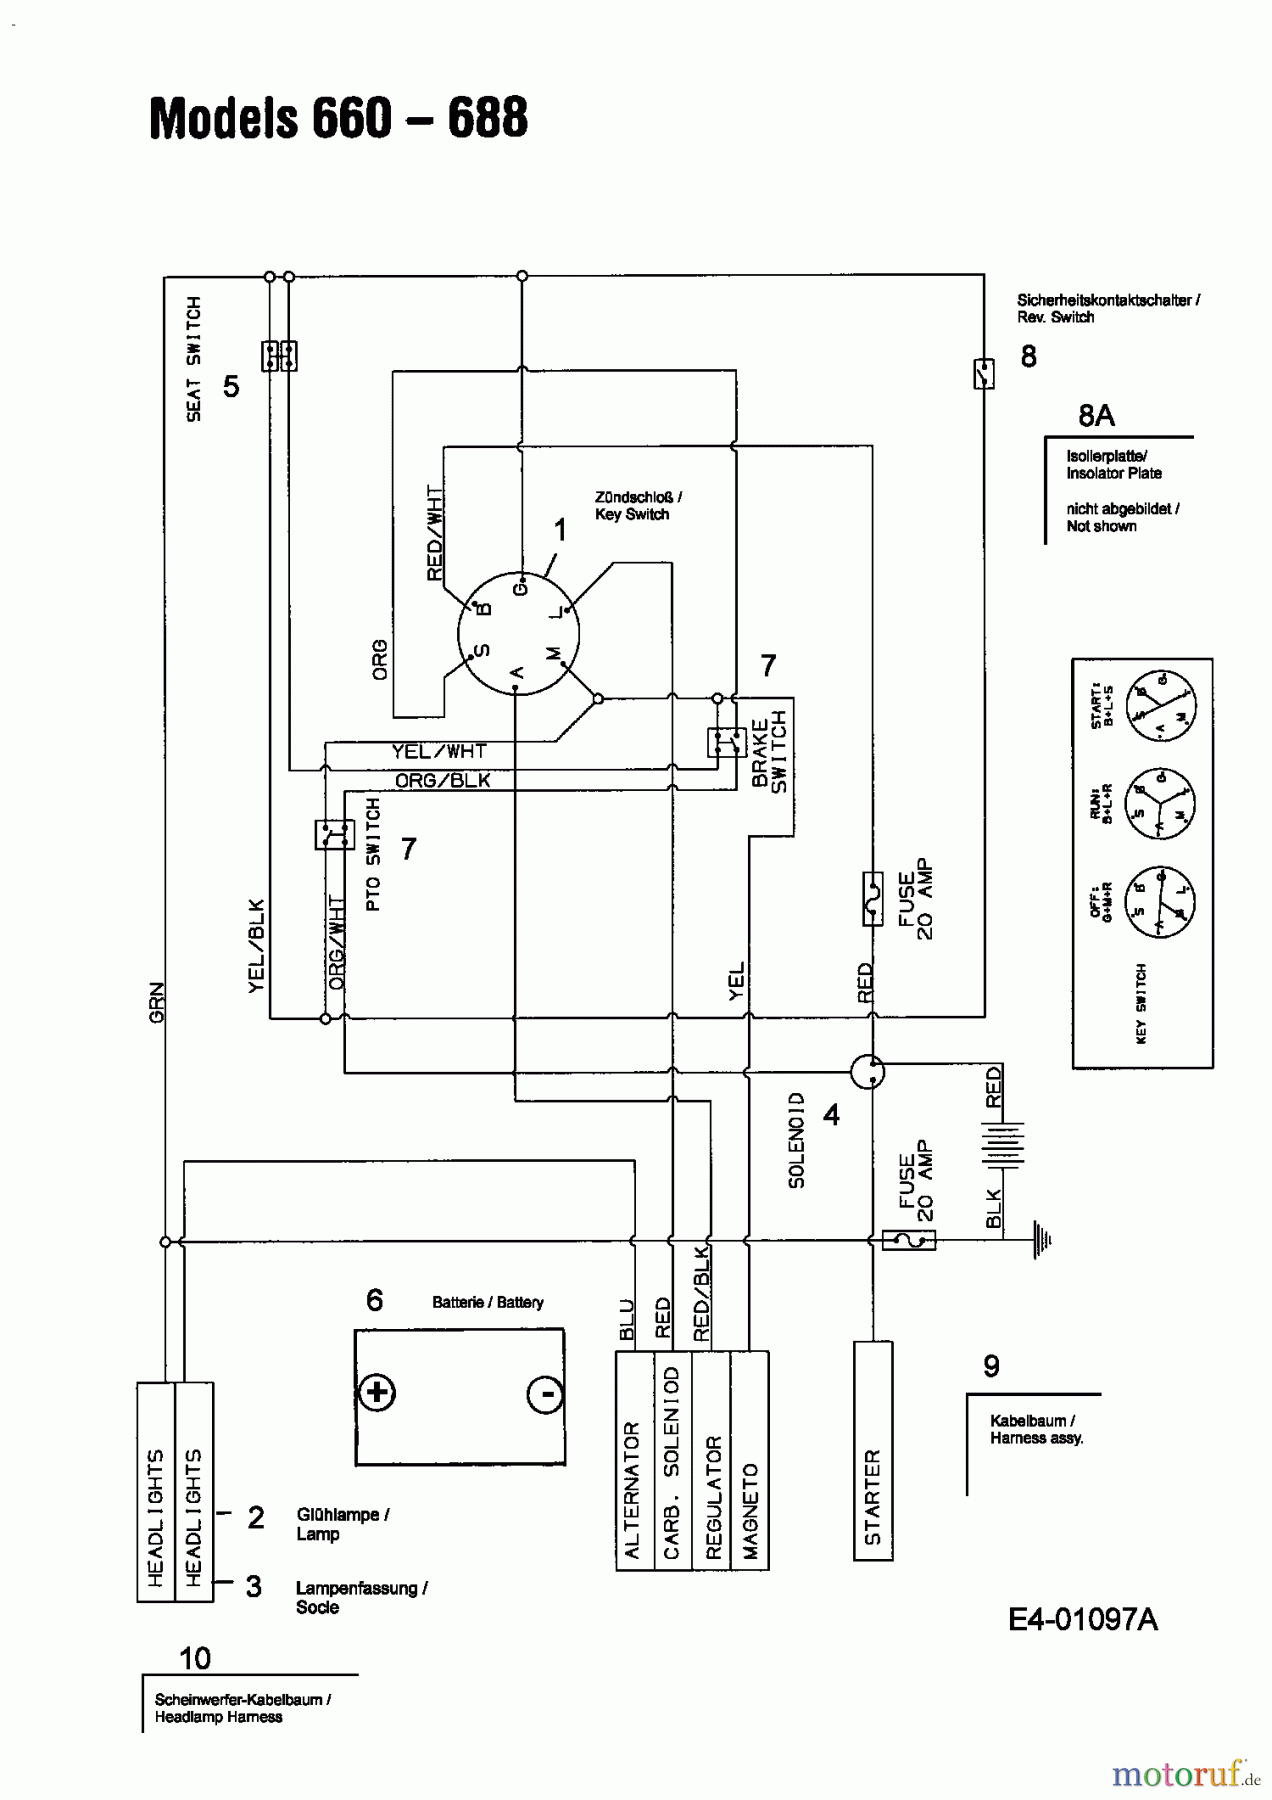  MTD Lawn tractors B 155 13AA688G678  (2004) Wiring diagram